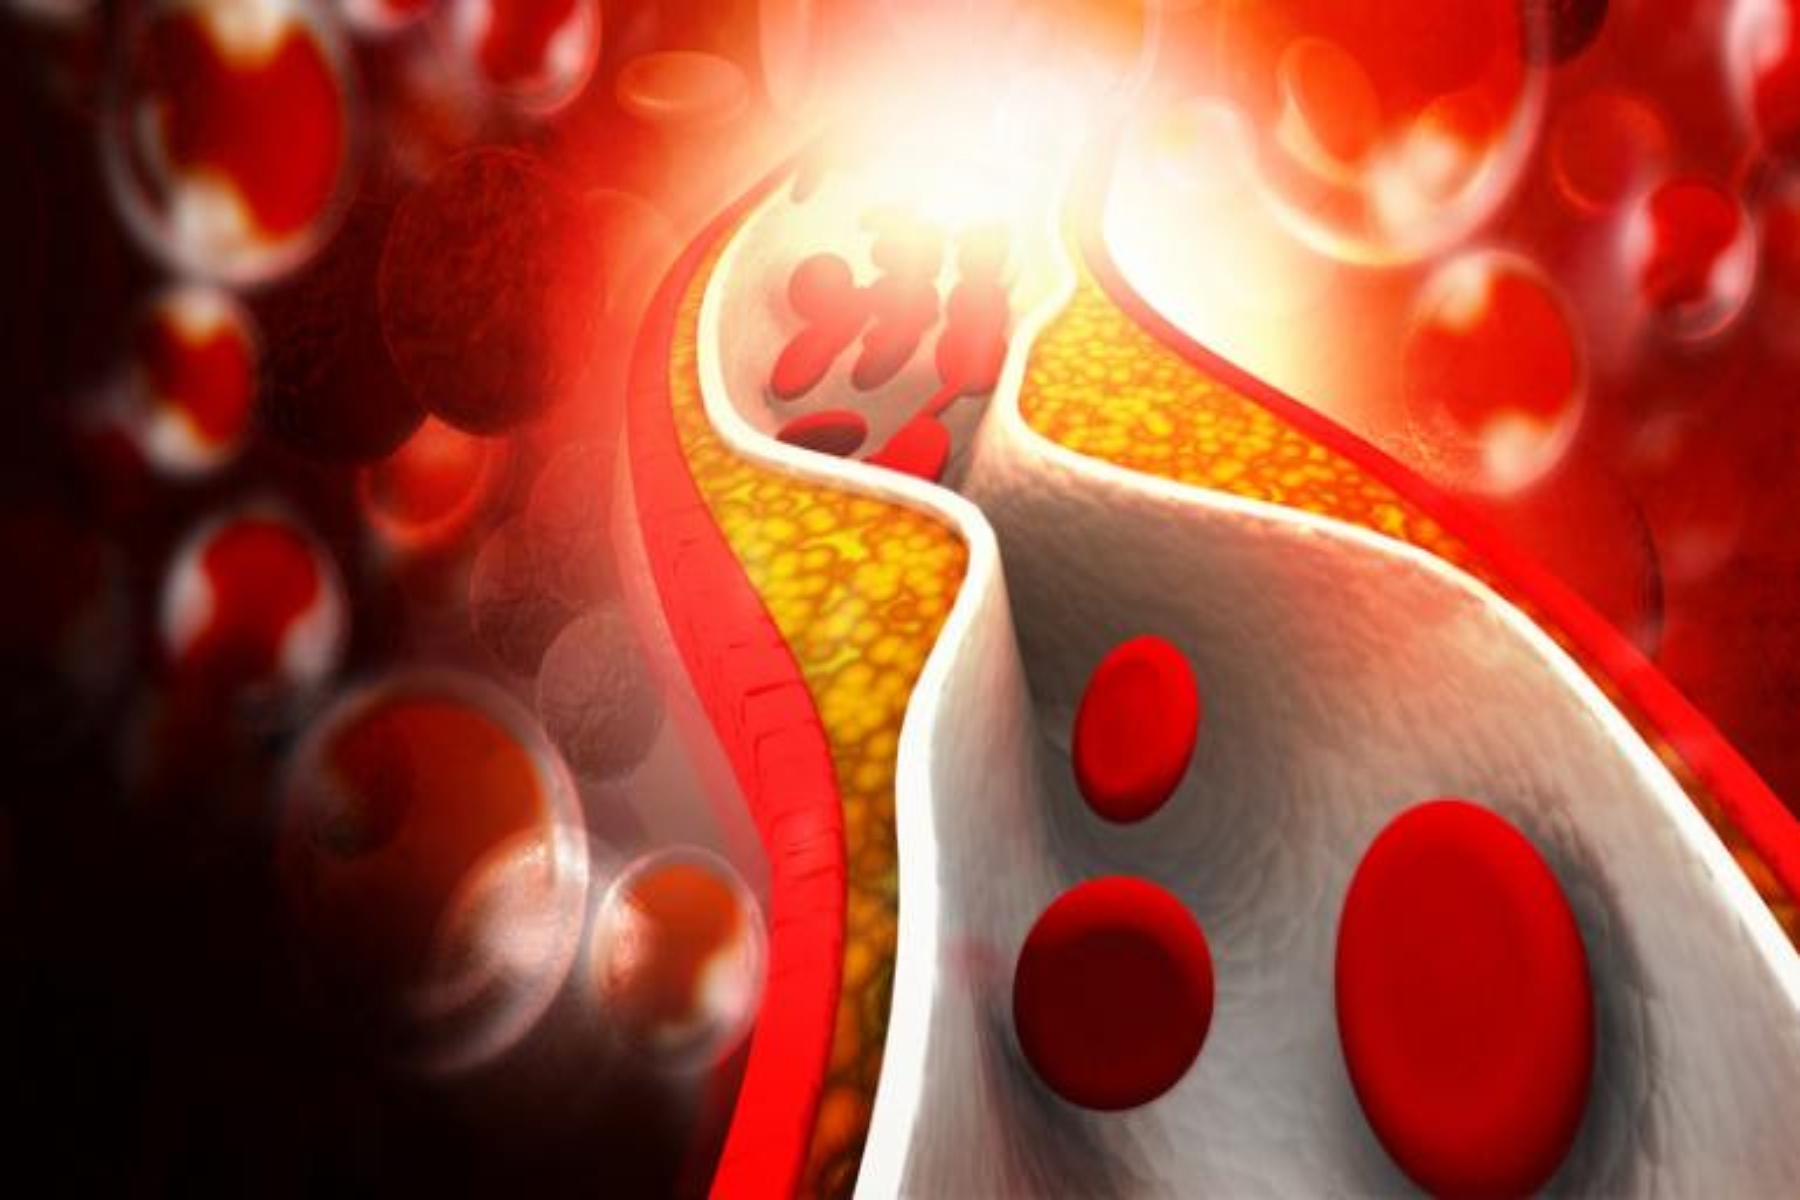 Βιταμίνη Κ2 καρδιά: 34% χαμηλότερος κίνδυνος καρδιακής νόσου με επαρκή λήψη Κ2